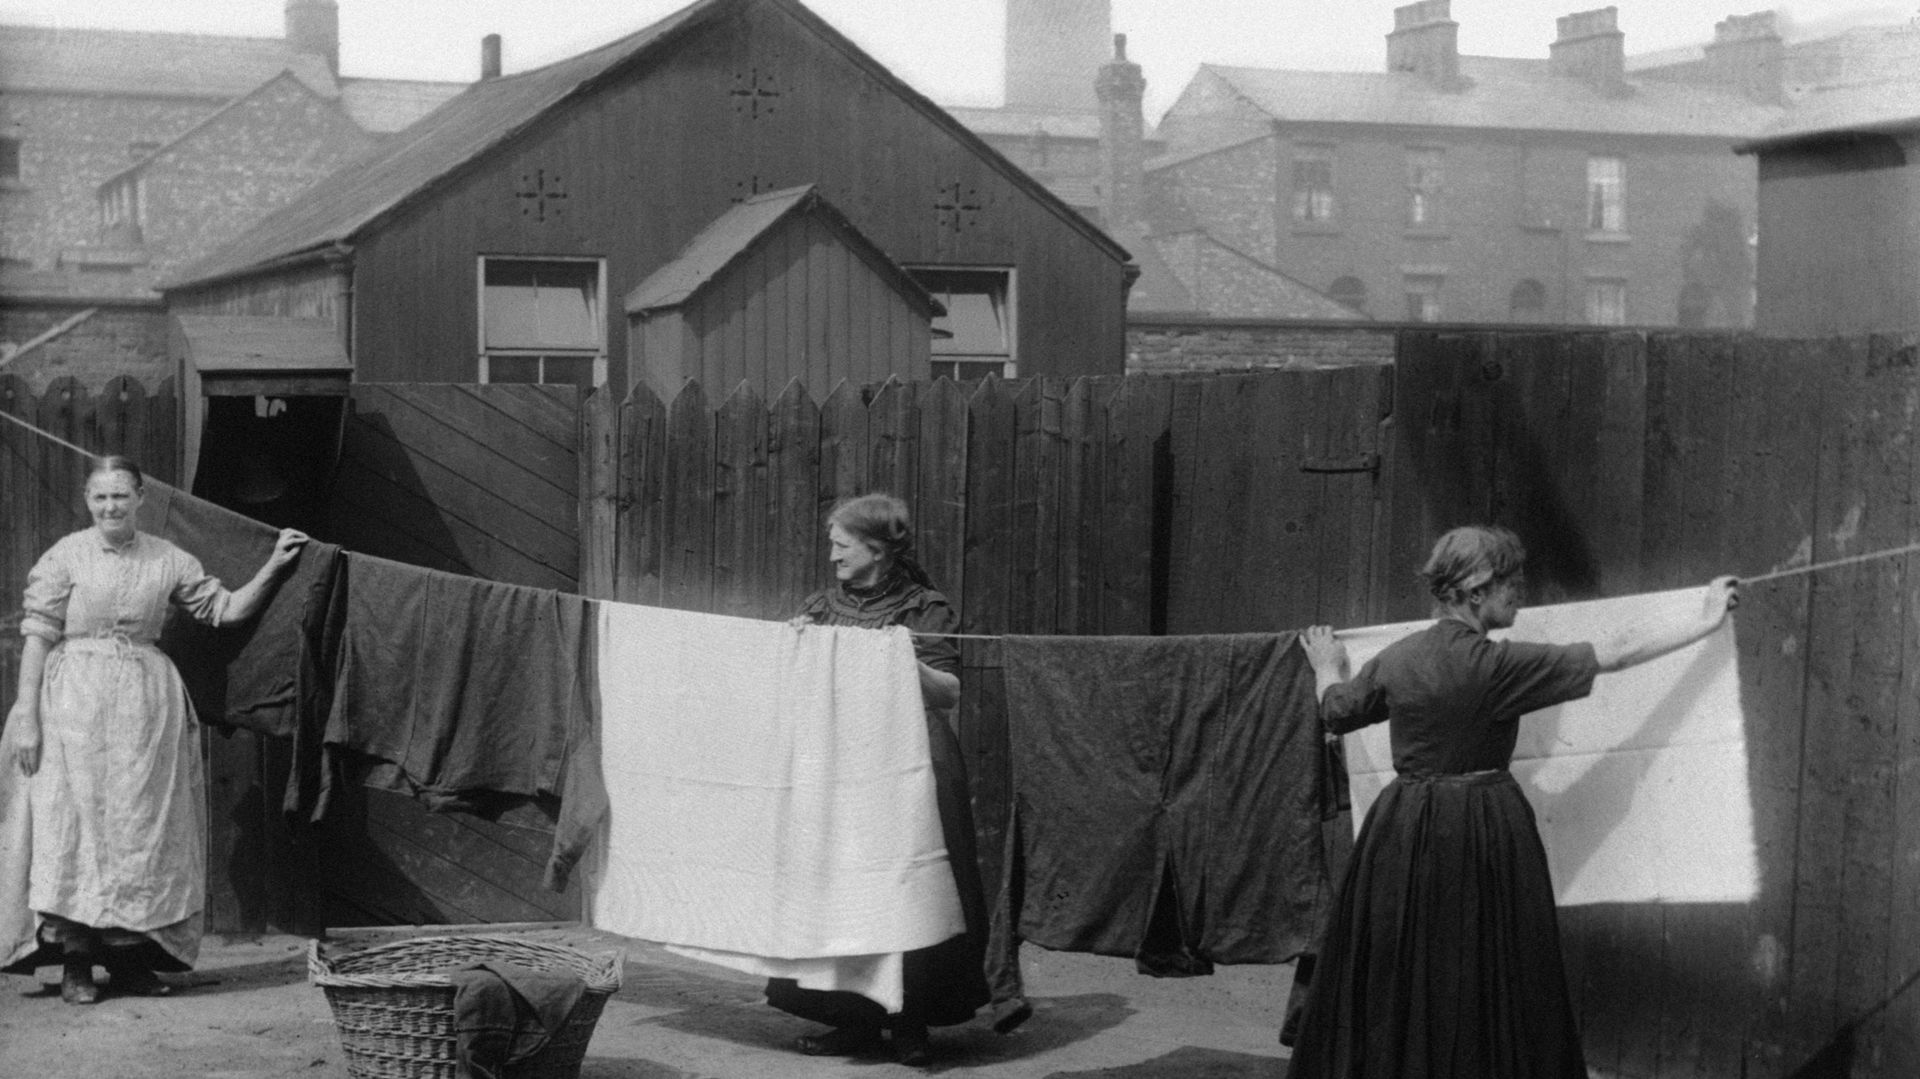 Des femmes étendent leur linge en Grande-Bretagne vers 1880. Image d'illustration.